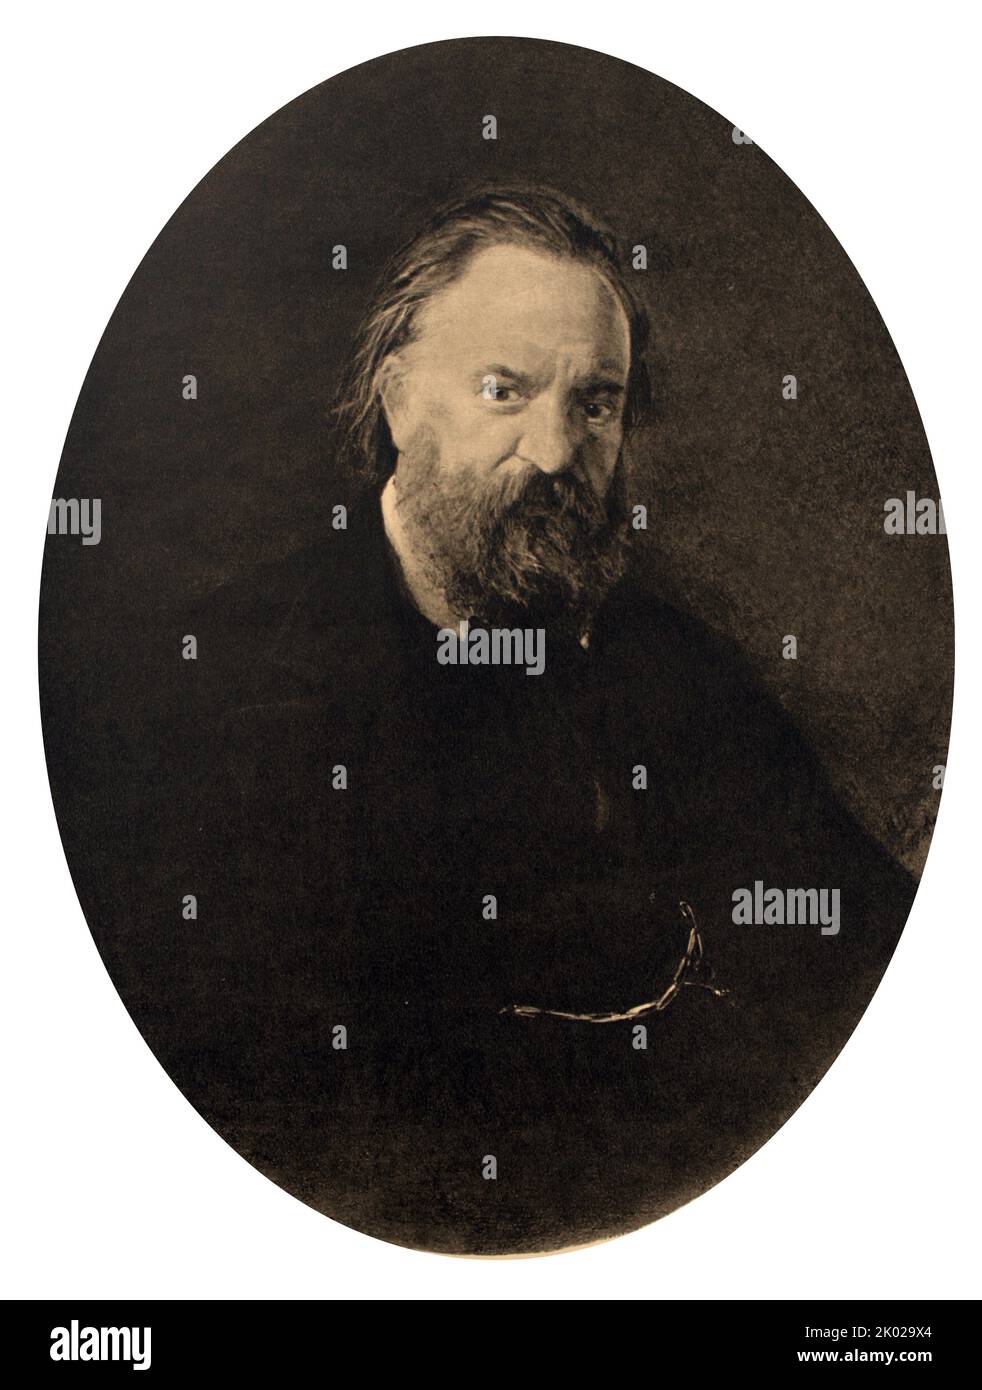 Porträt des Schriftstellers Alexander Ivanovich Herzen. 1867. Alexander Ivanovich Herzen (1812 - 1870) war ein russischer Schriftsteller und Denker, bekannt als der "Vater des russischen Sozialismus" Stockfoto